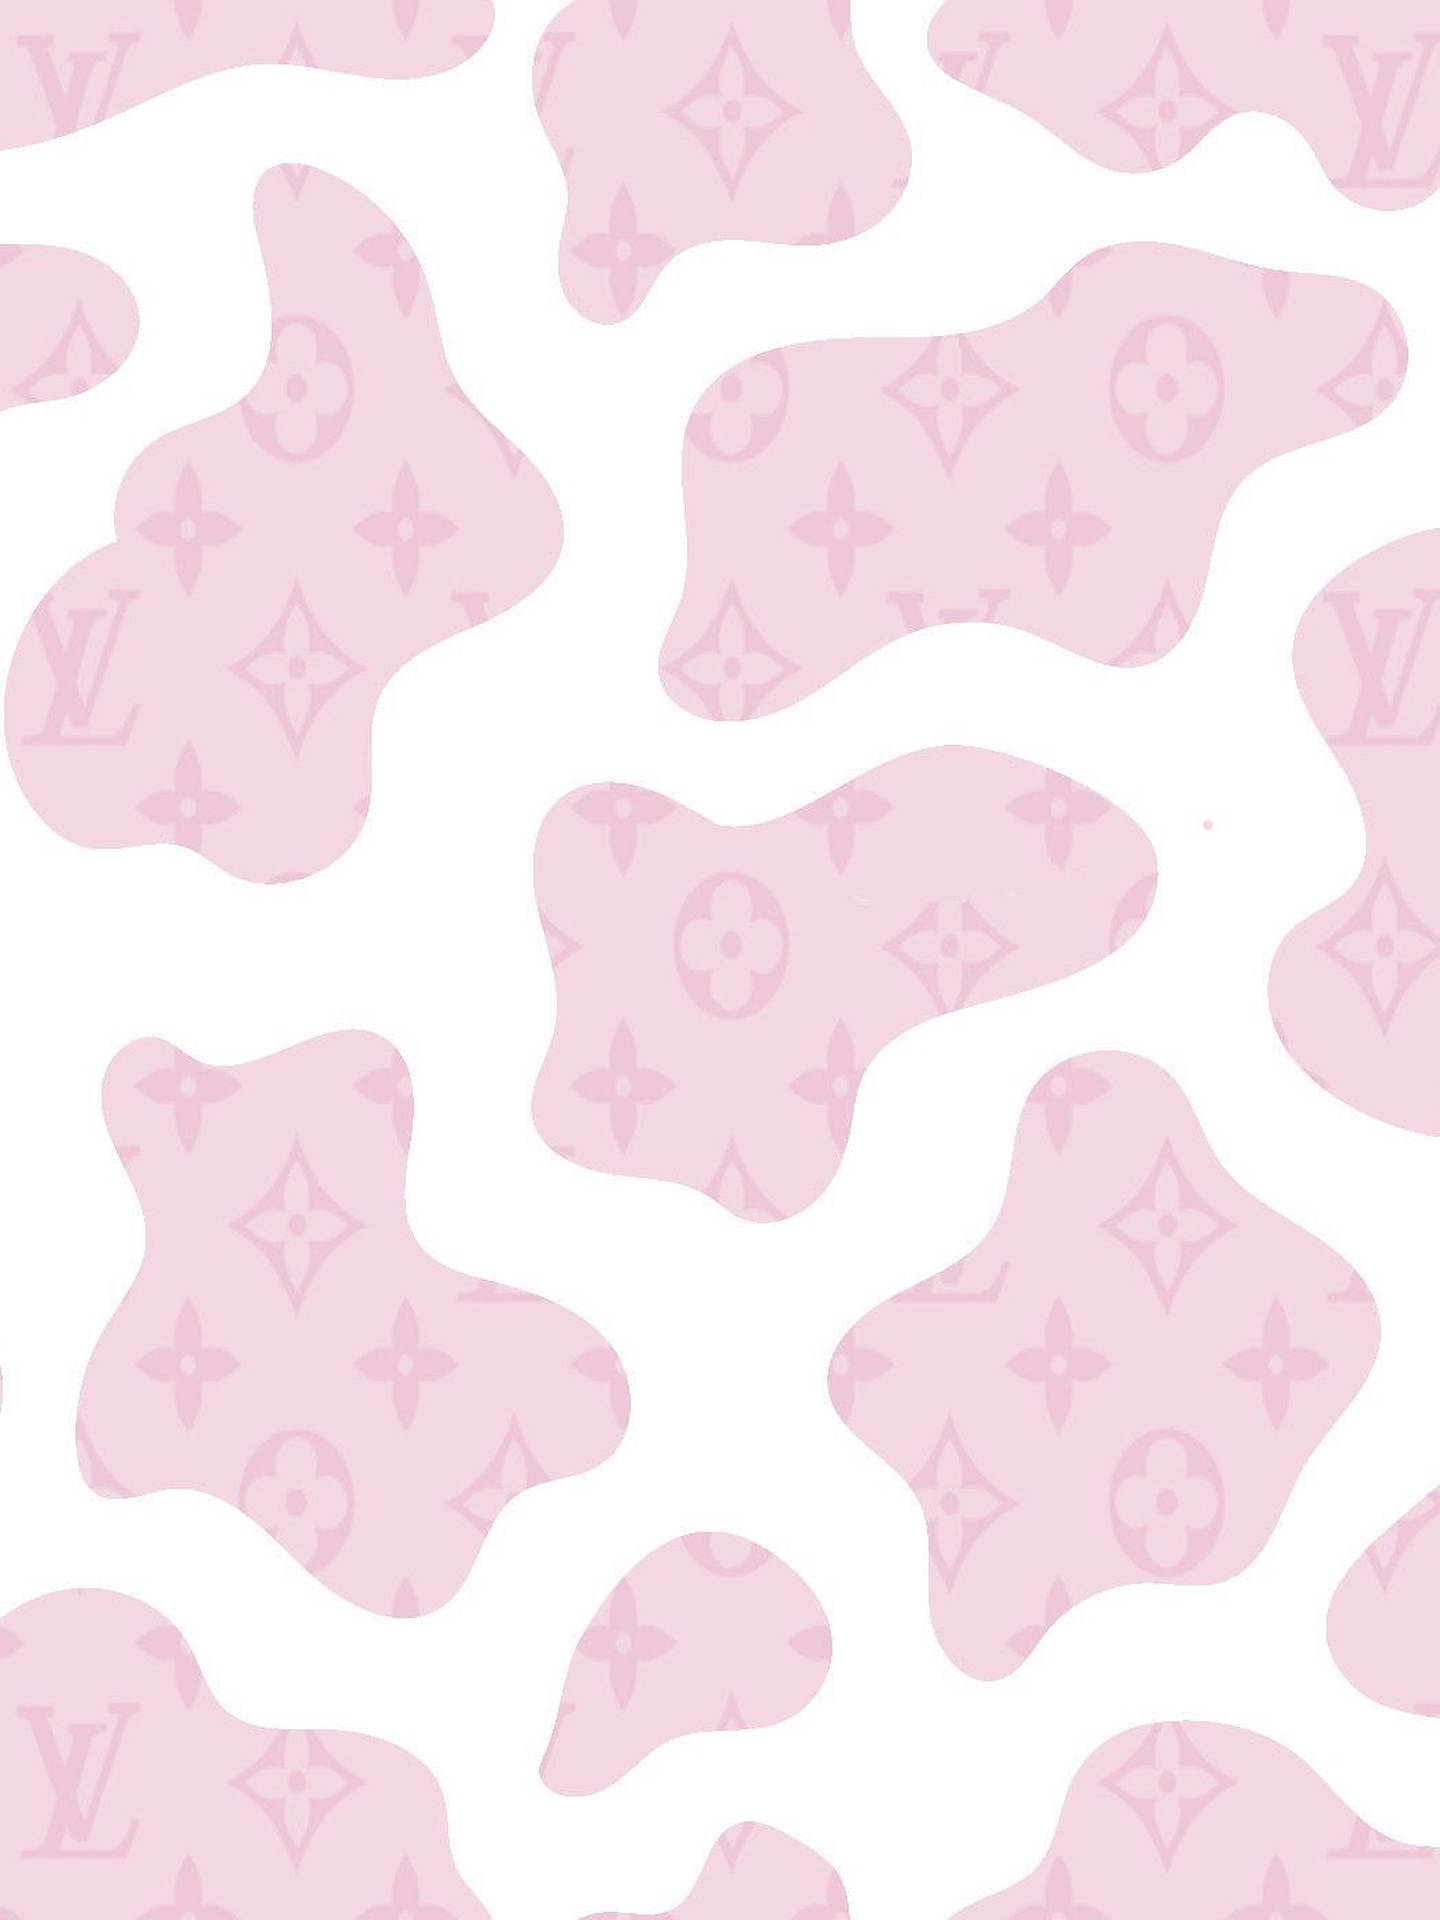 Pastel Pink Louis Vuitton Cow Print Wallpaper